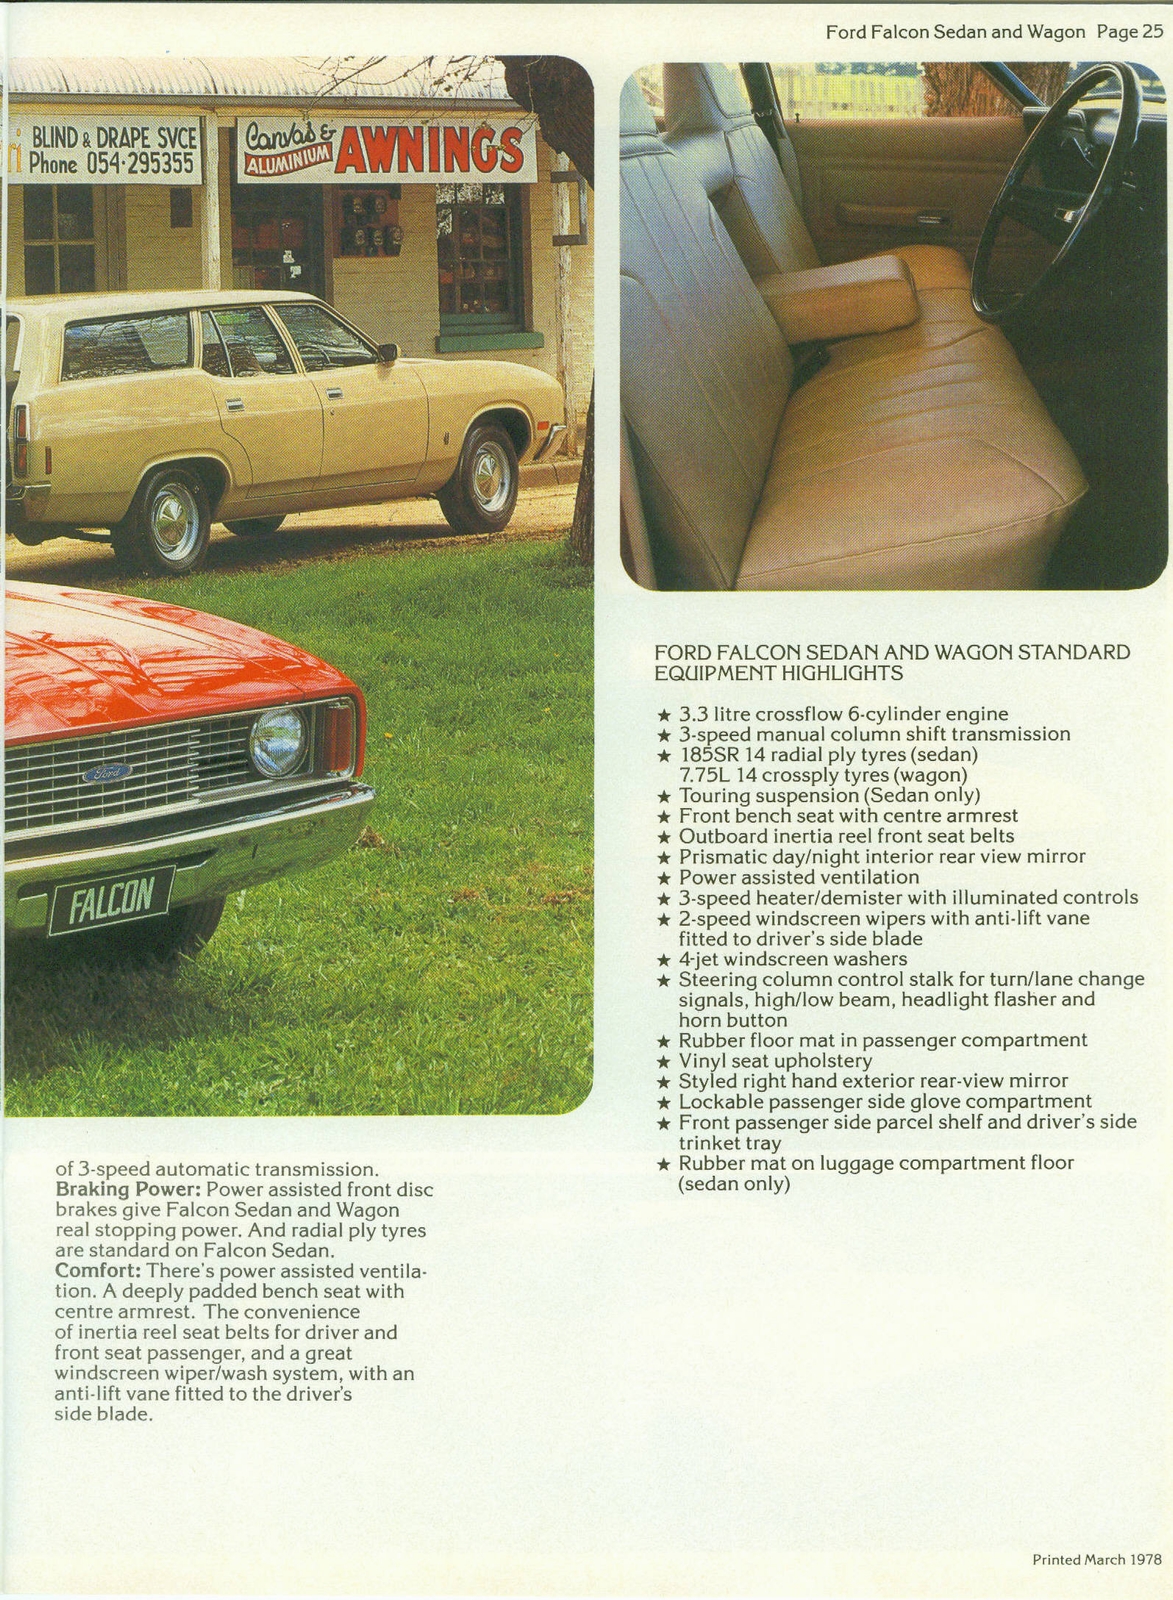 n_1978 Ford Australia-25.jpg